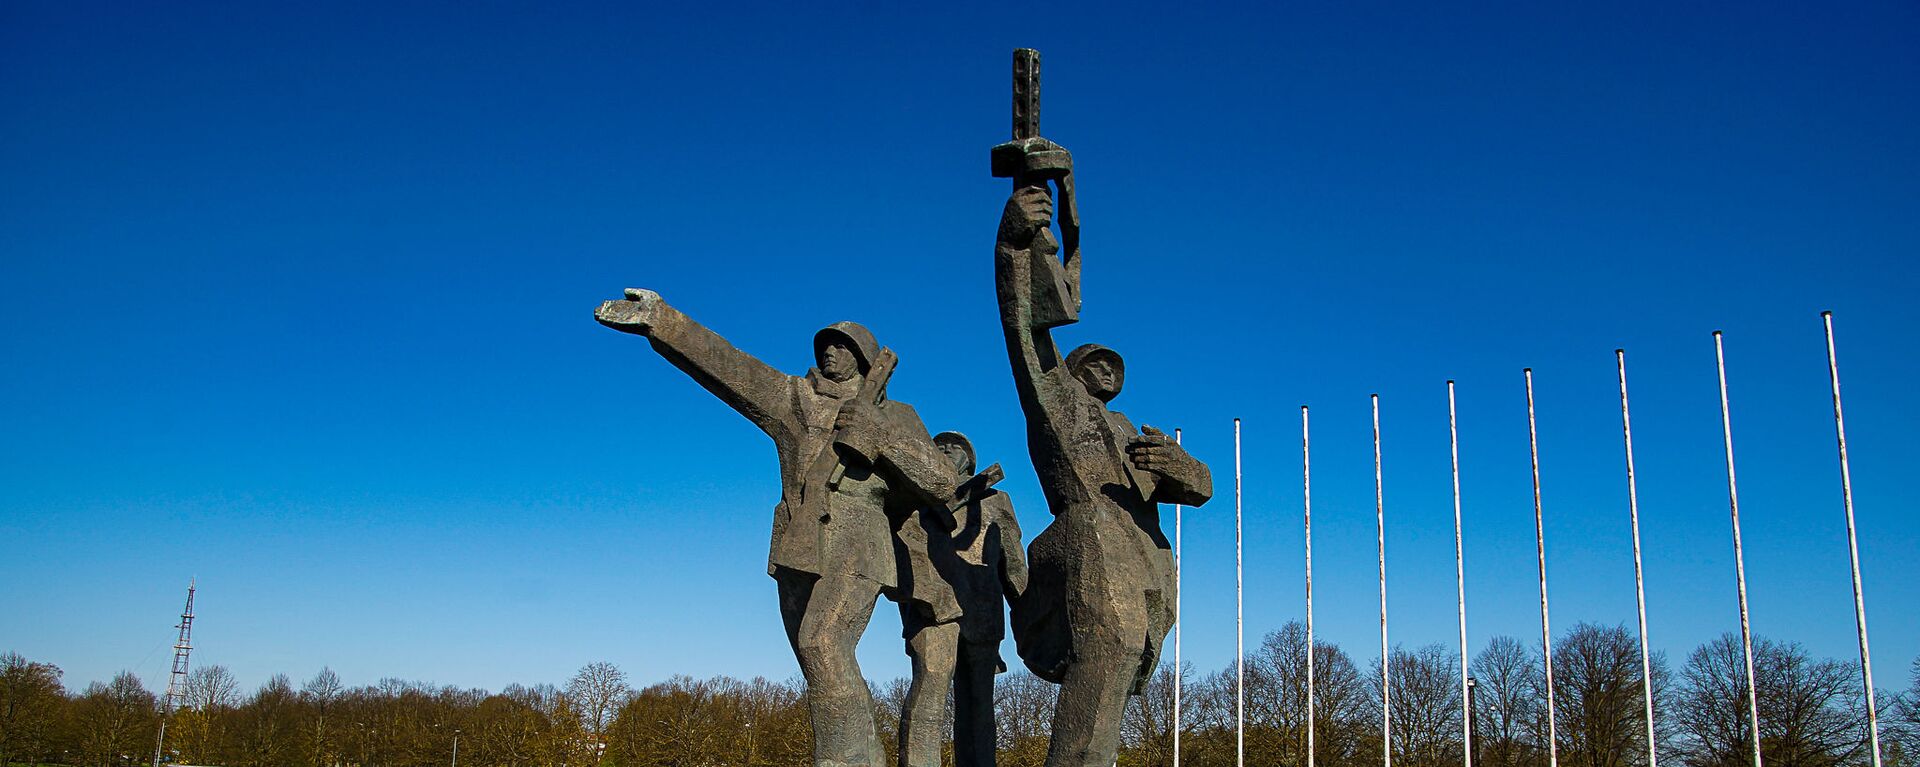 Памятник Освободителям Риги - Sputnik Латвия, 1920, 20.05.2021